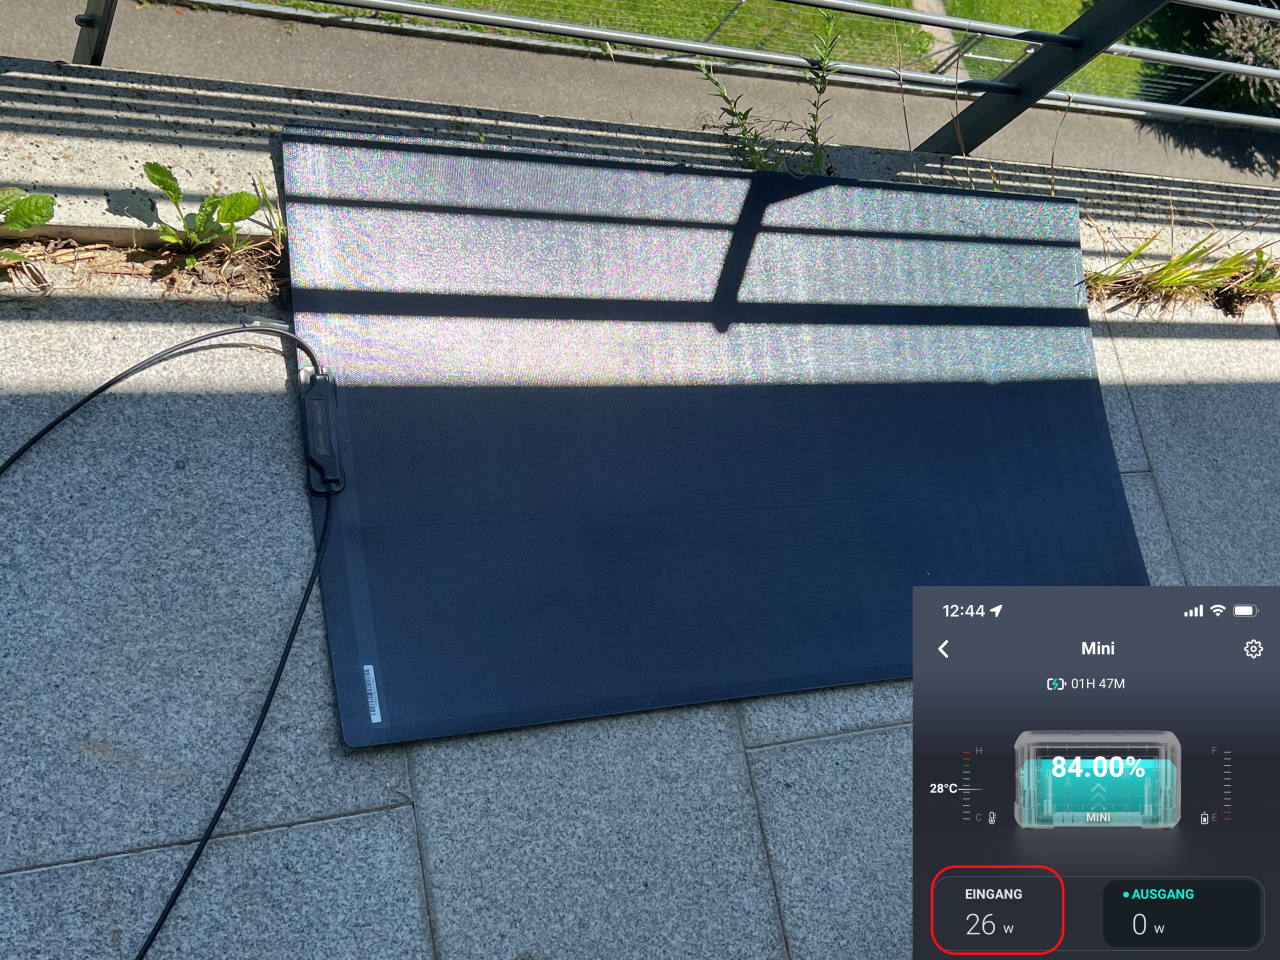 etfe-solar-solarpanel-panel-photovoltaic-module-modul-review-test-vanlife-overlanding-006.jpg